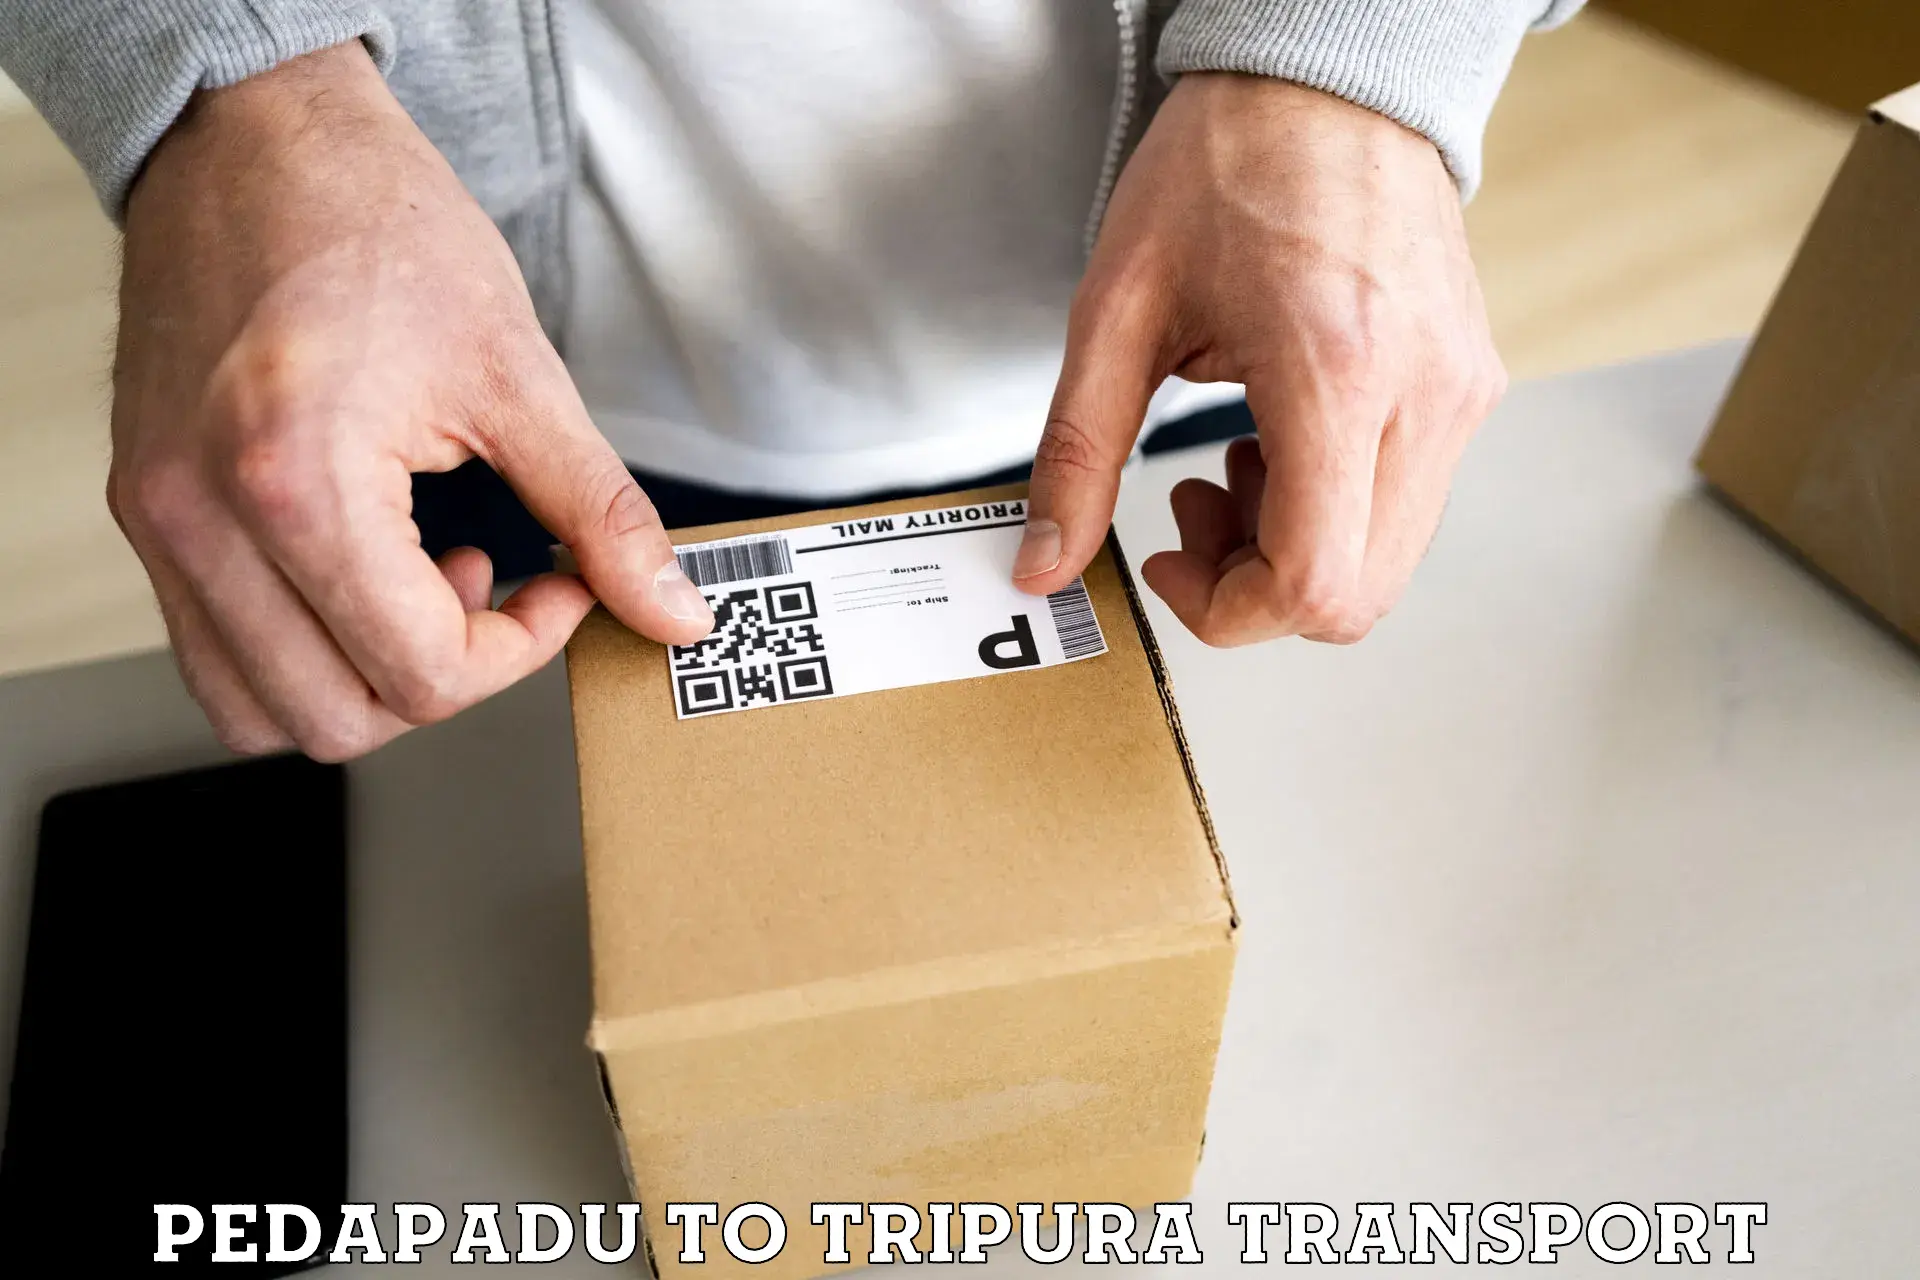 Furniture transport service Pedapadu to Udaipur Tripura